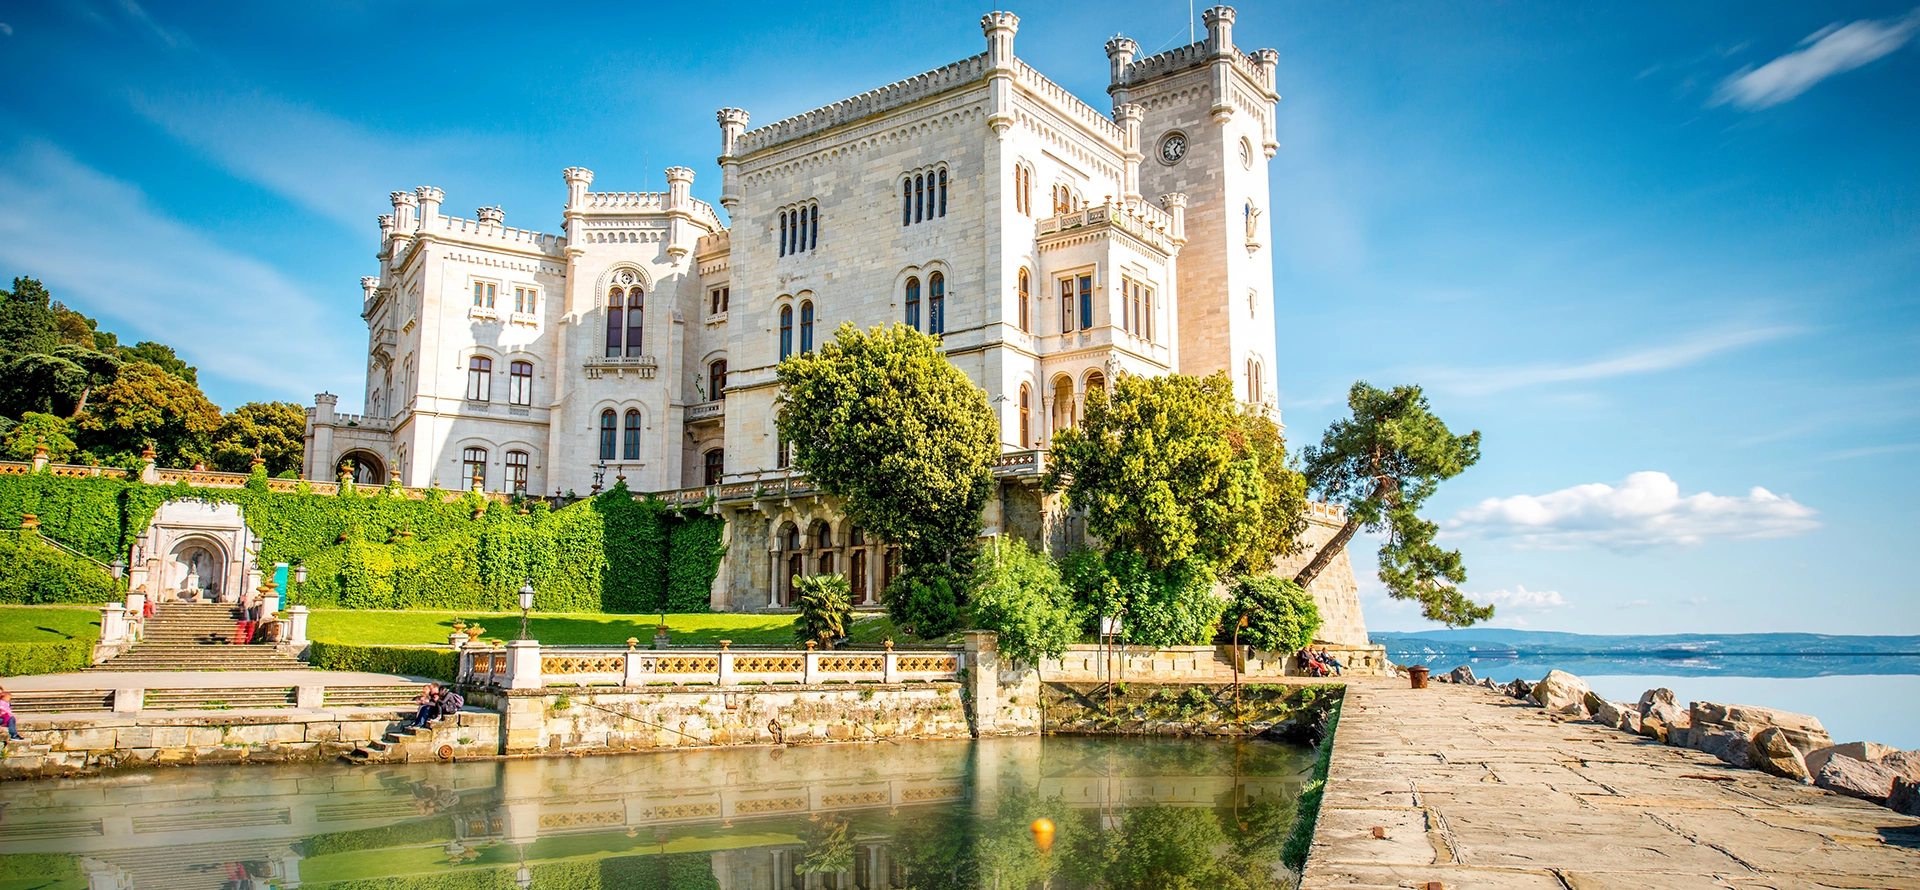 Châteaux en Languedoc achat / vente de château près de Montpellier dans l'Hérault et de Nîmes dans le Gard